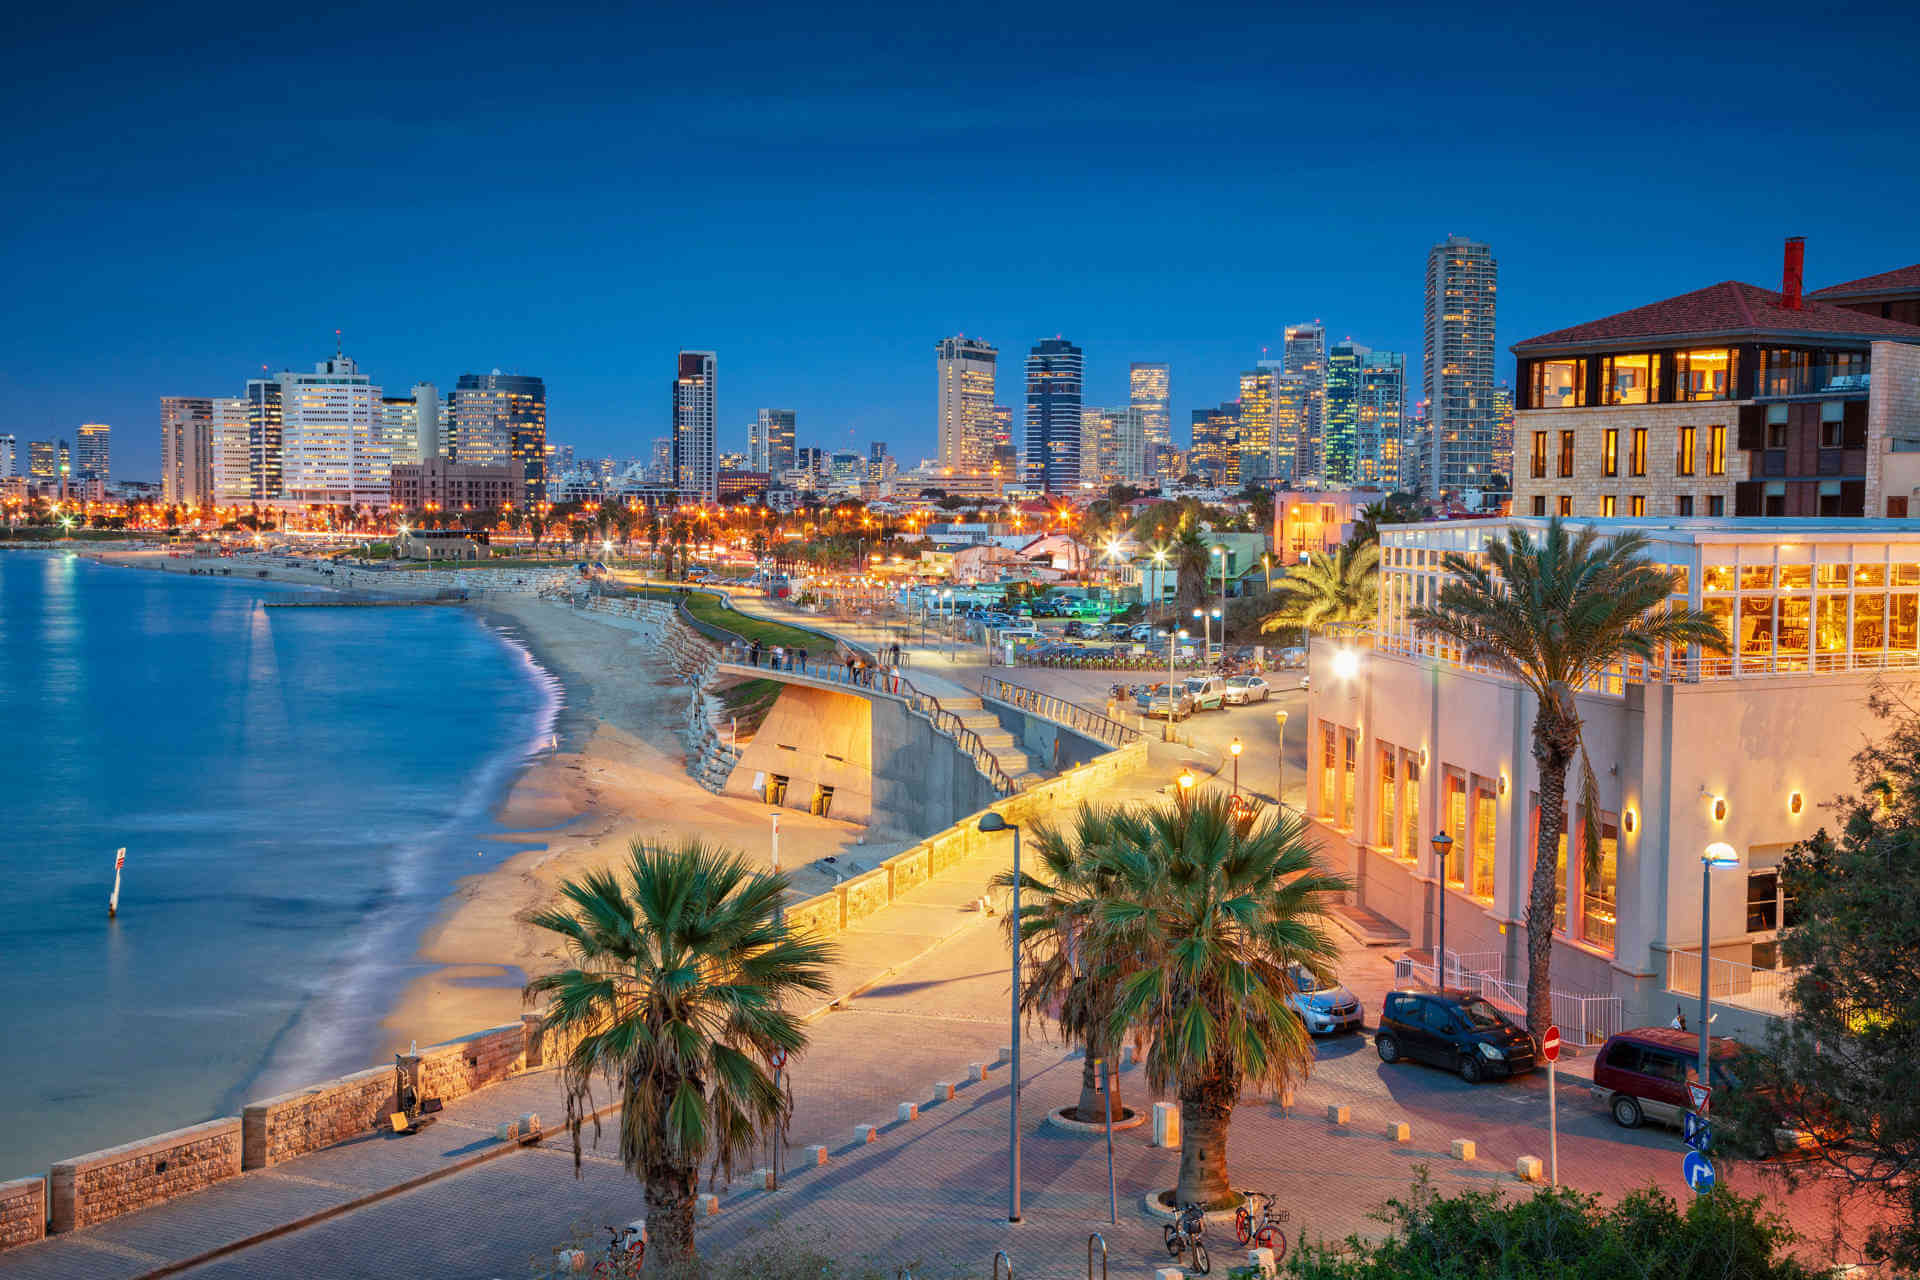 Tel Aviv Travel Tips